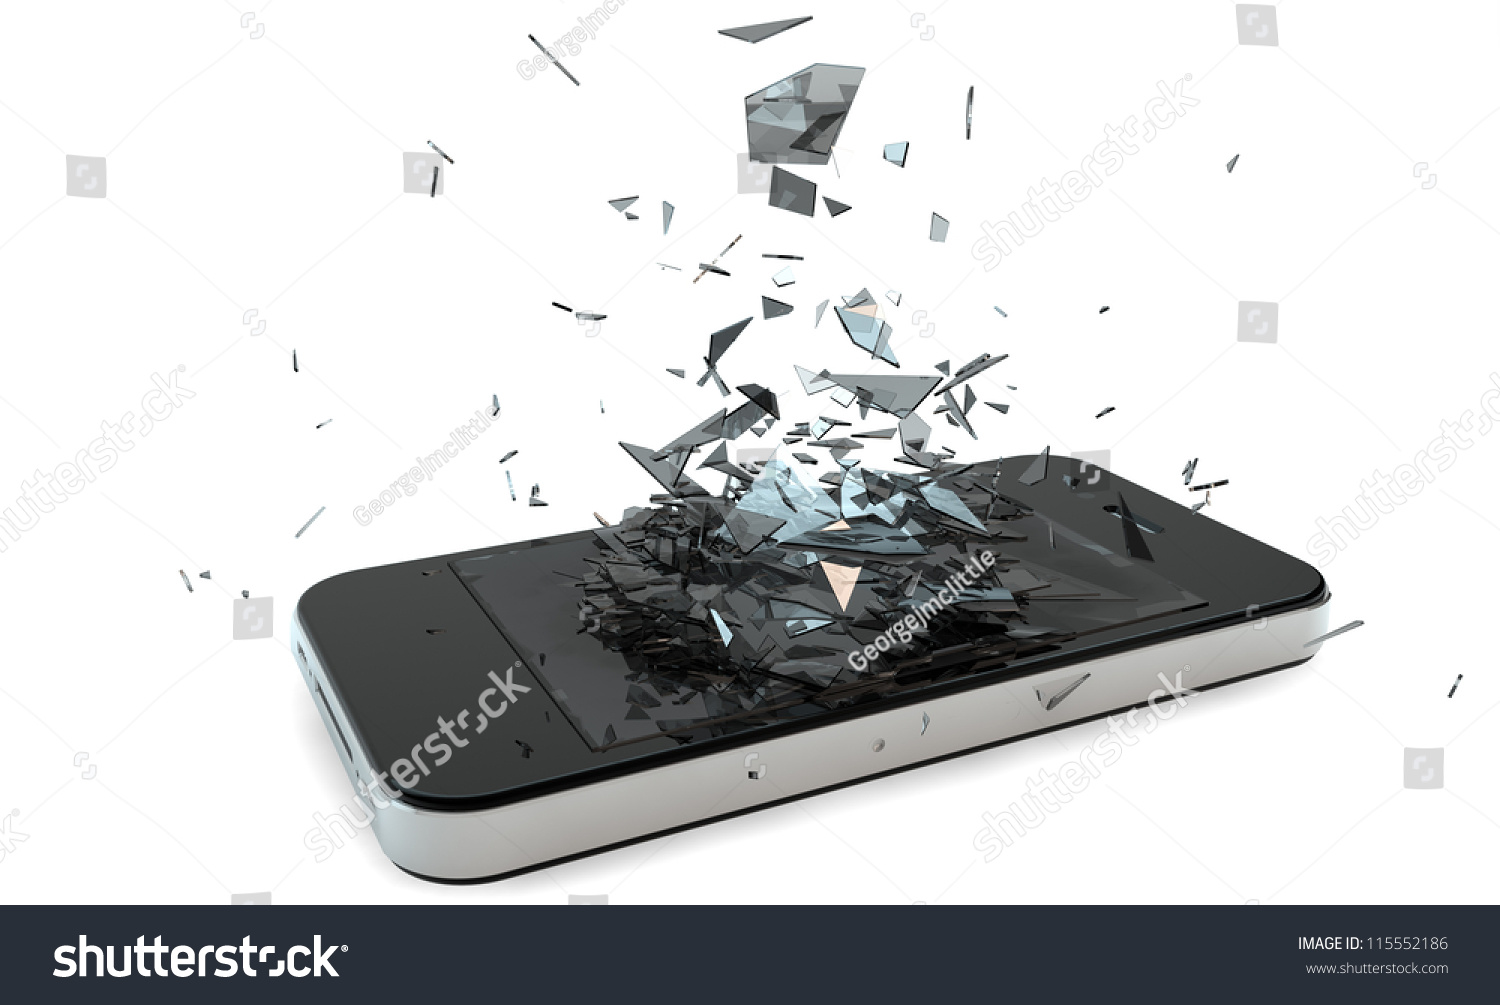 stock-photo-render-of-a-broken-smart-phone-115552186.jpg